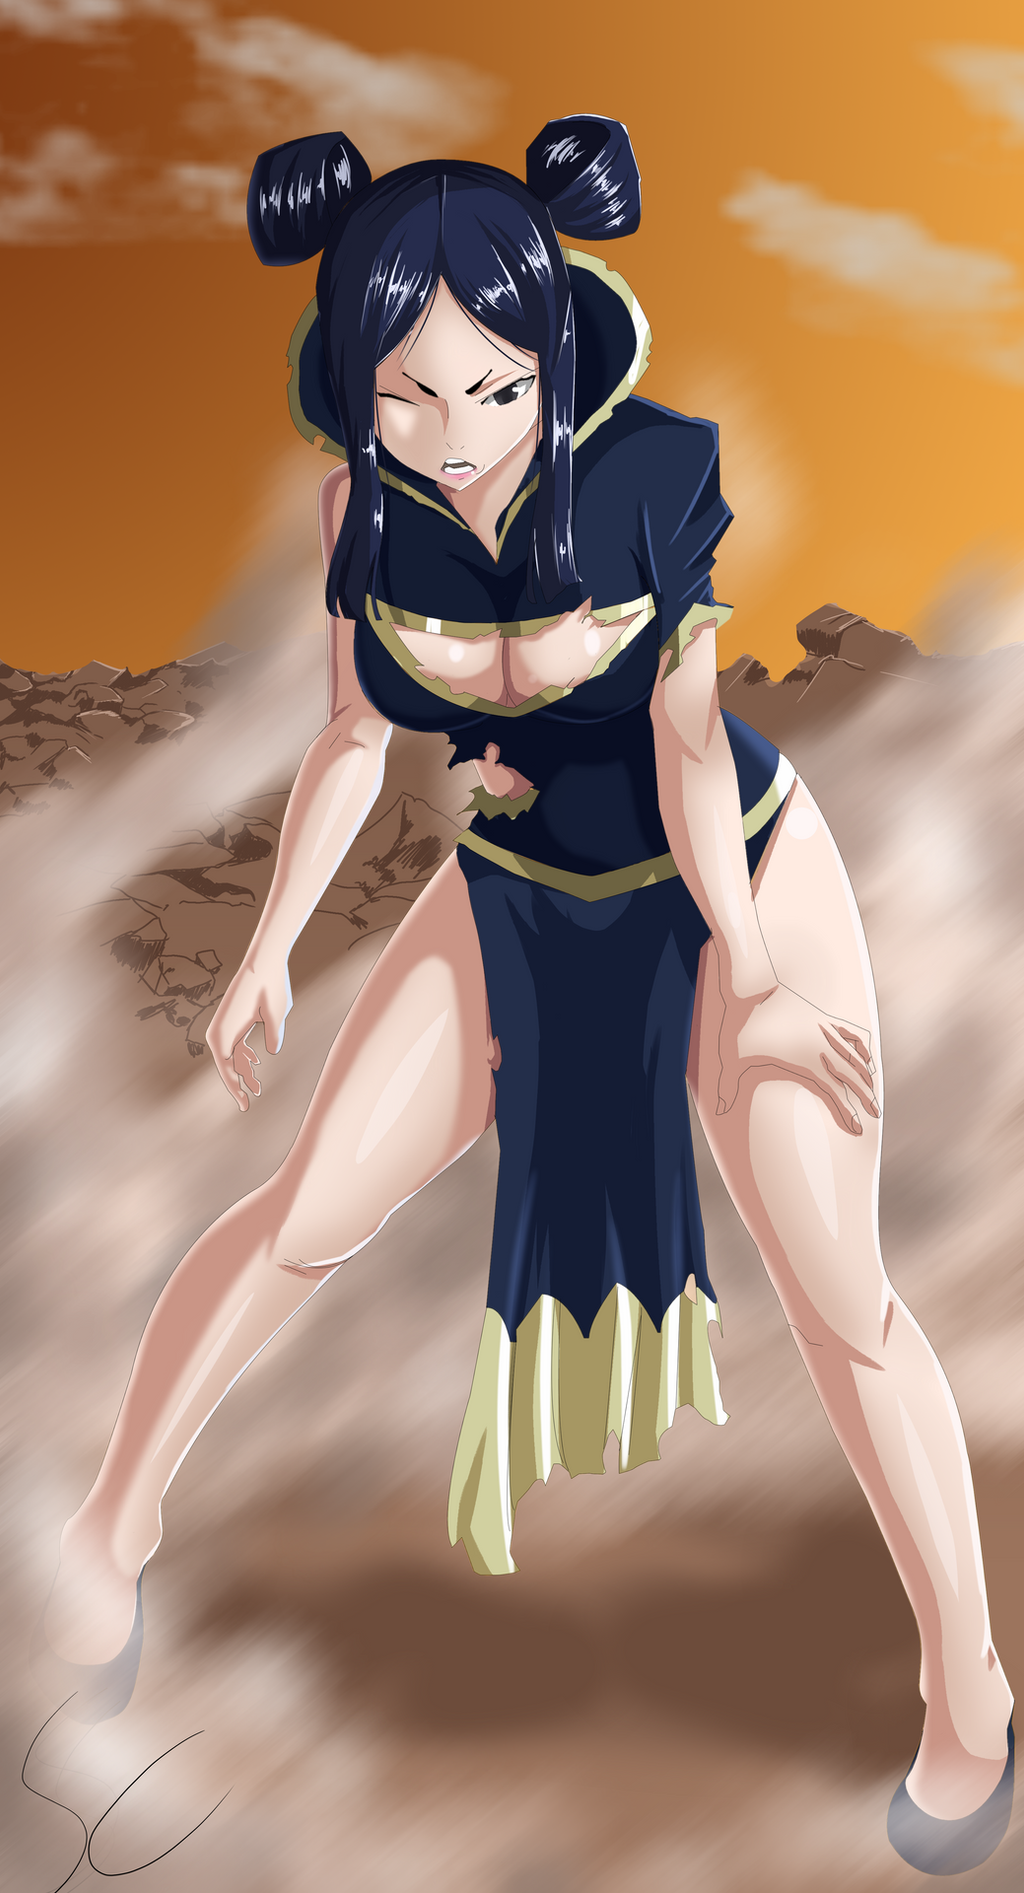 Minerva Manga Spoiler by DazelArt17 on DeviantArt